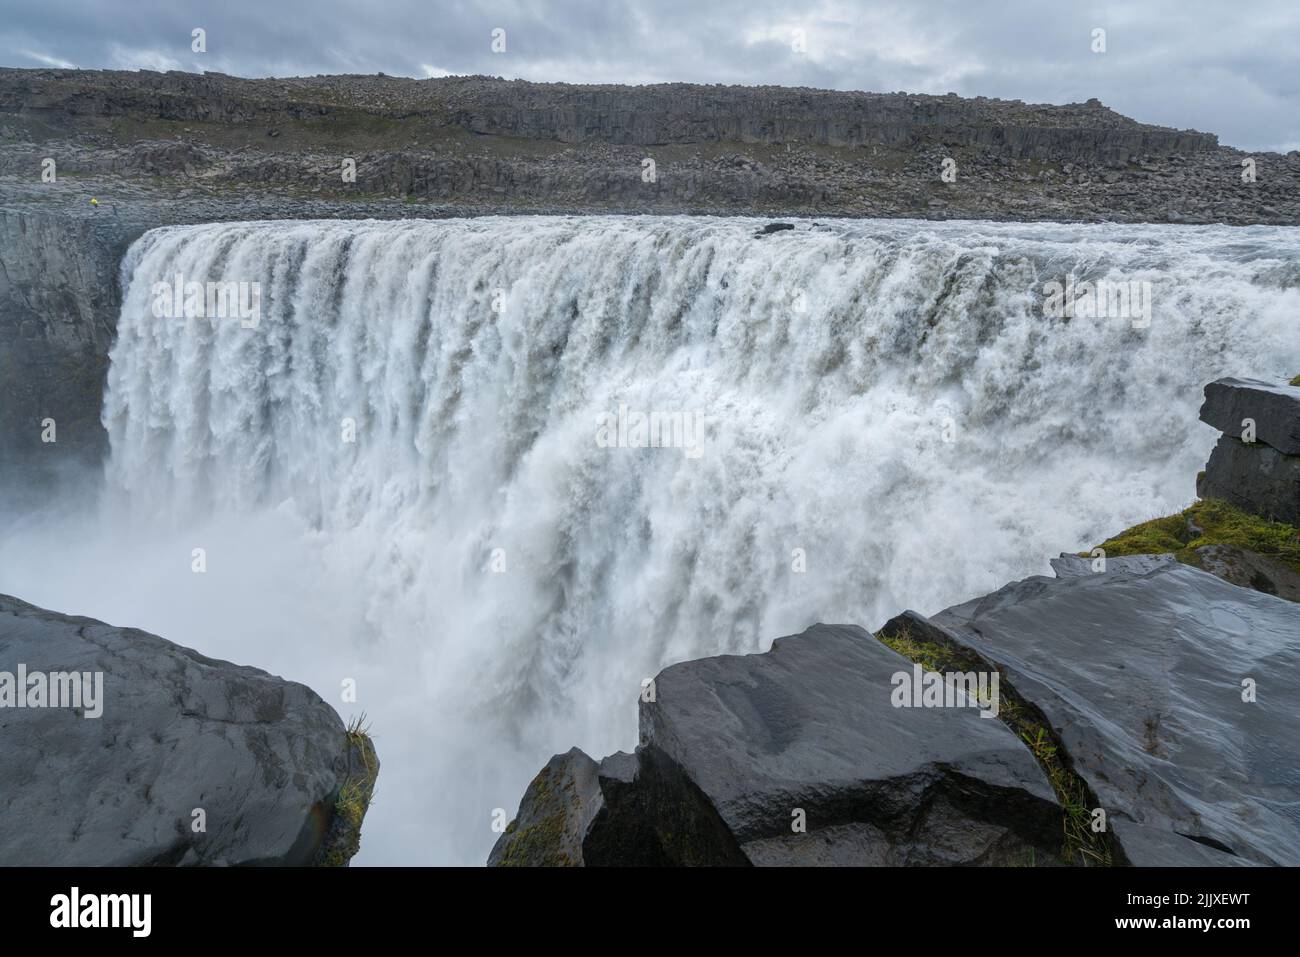 Größter Wasserfall Europas, Dettifoss. Schlammiges Wasser fällt über den Rand. Majestätischer isländischer Wasserfall an einem regnerischen, bewölkten Tag. Stockfoto